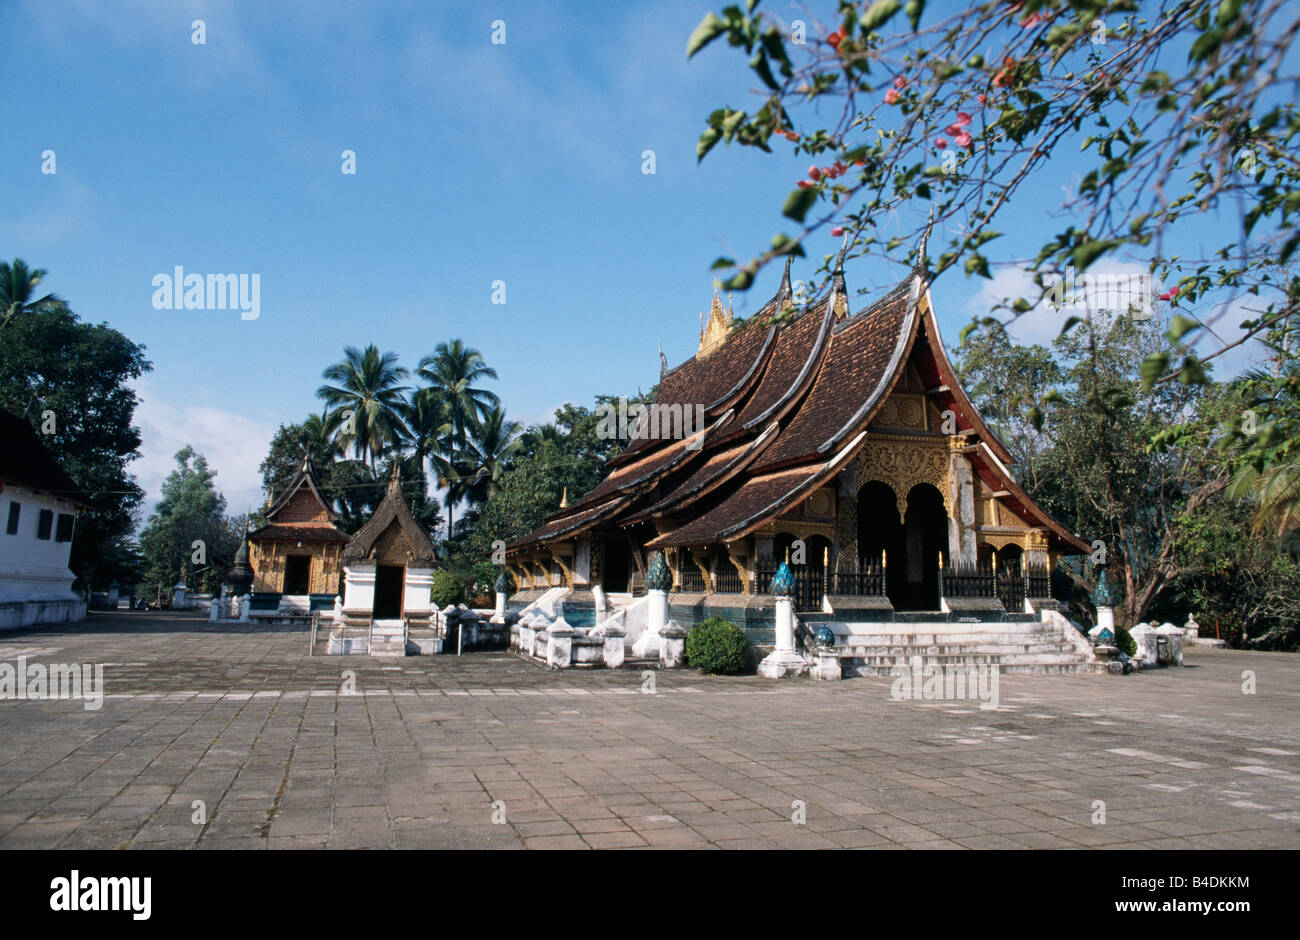 Wat Xieng Thong in Luang Prabang, Laos.  It was built by King Setthathirat in 1559. Stock Photo